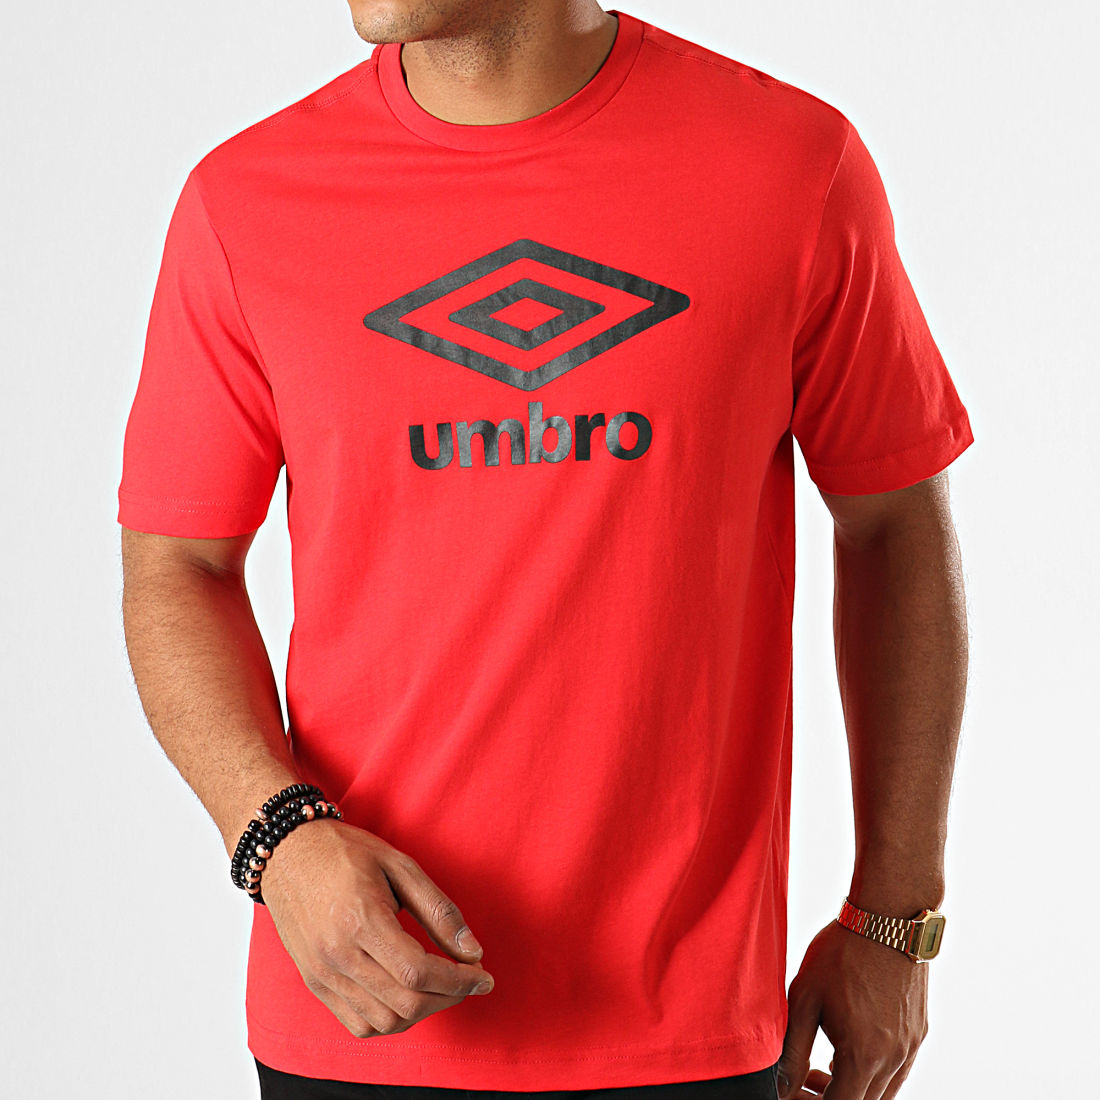 umbro-tee-shirt-729280-60-rouge-noir-laboutiqueofficielle